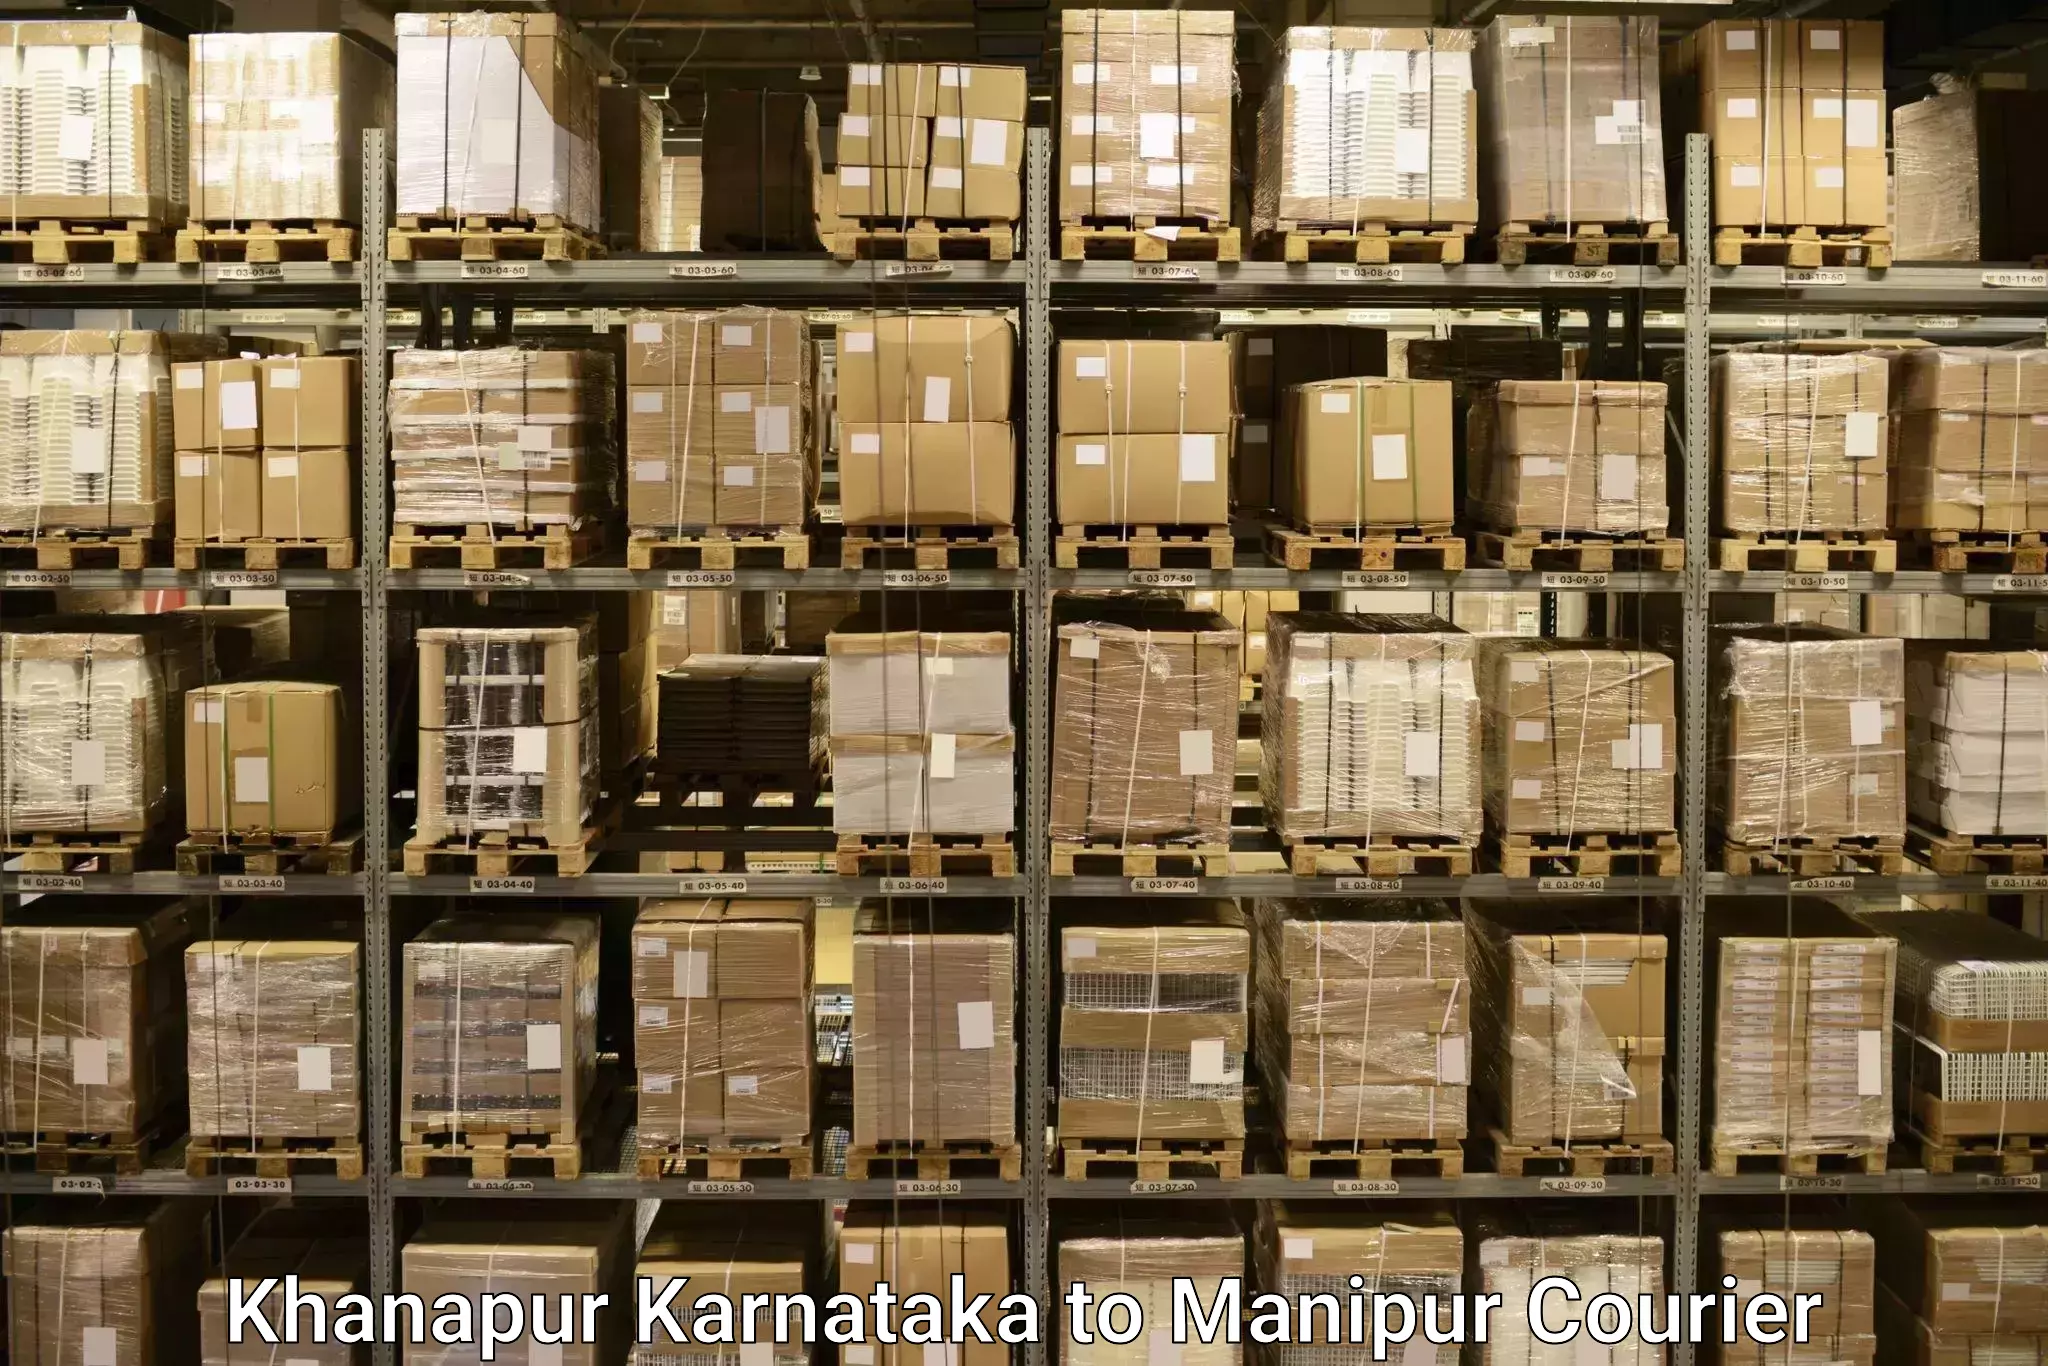 Baggage courier insights Khanapur Karnataka to Imphal